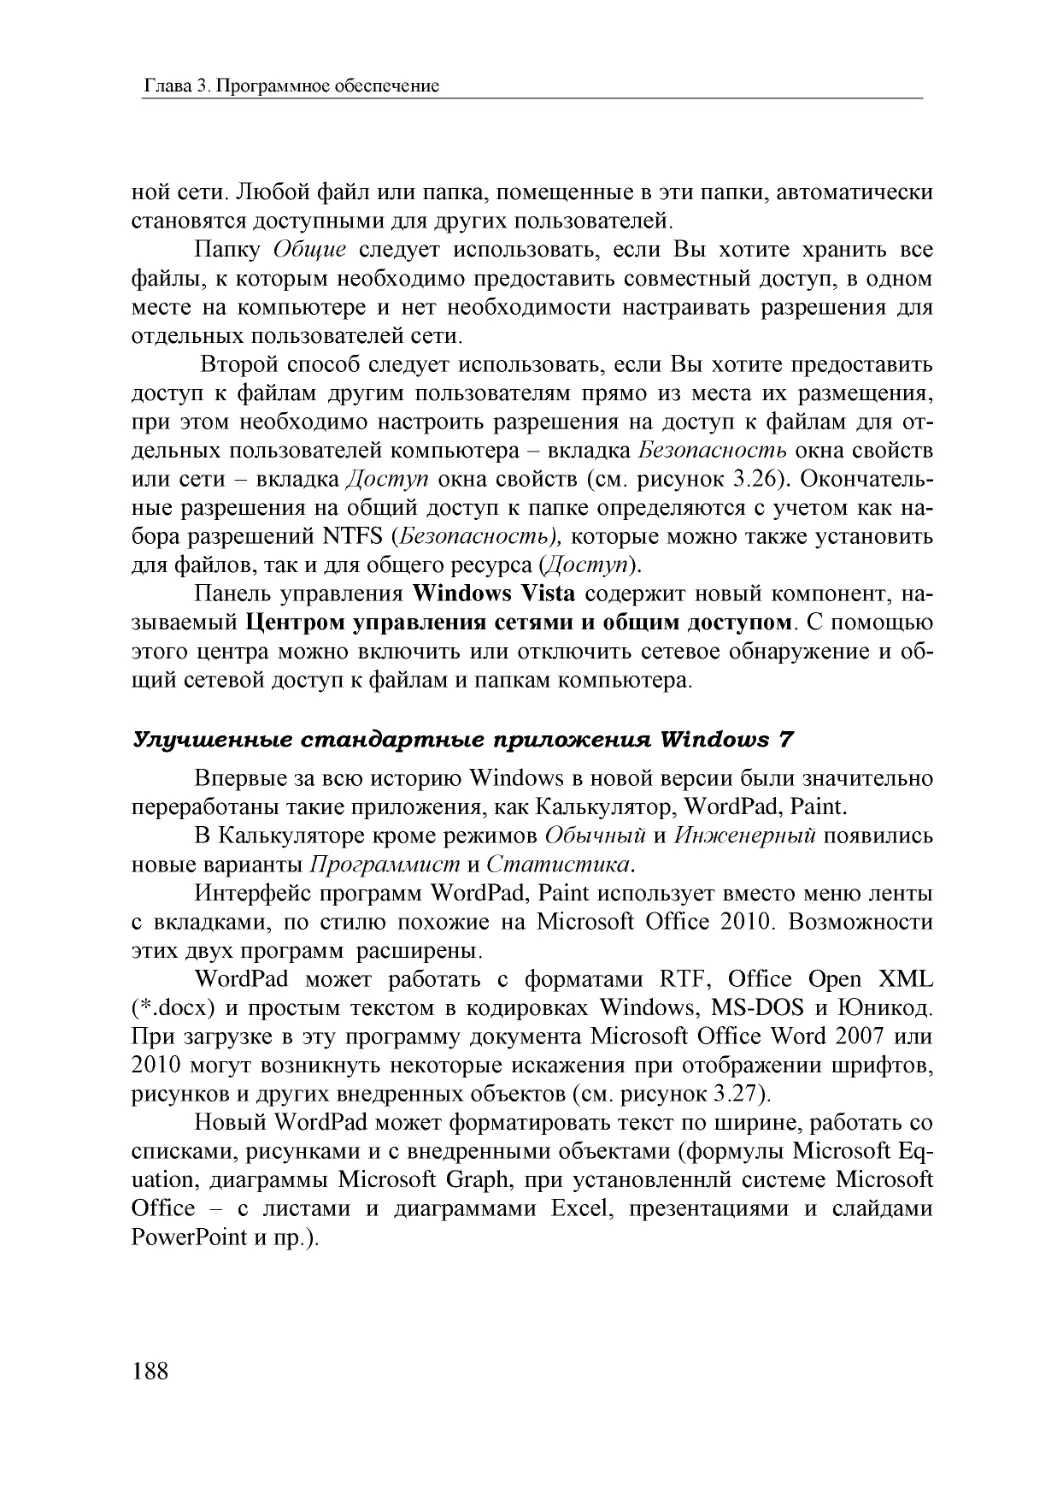 Informatika_Uchebnik_dlya_vuzov_2010 188